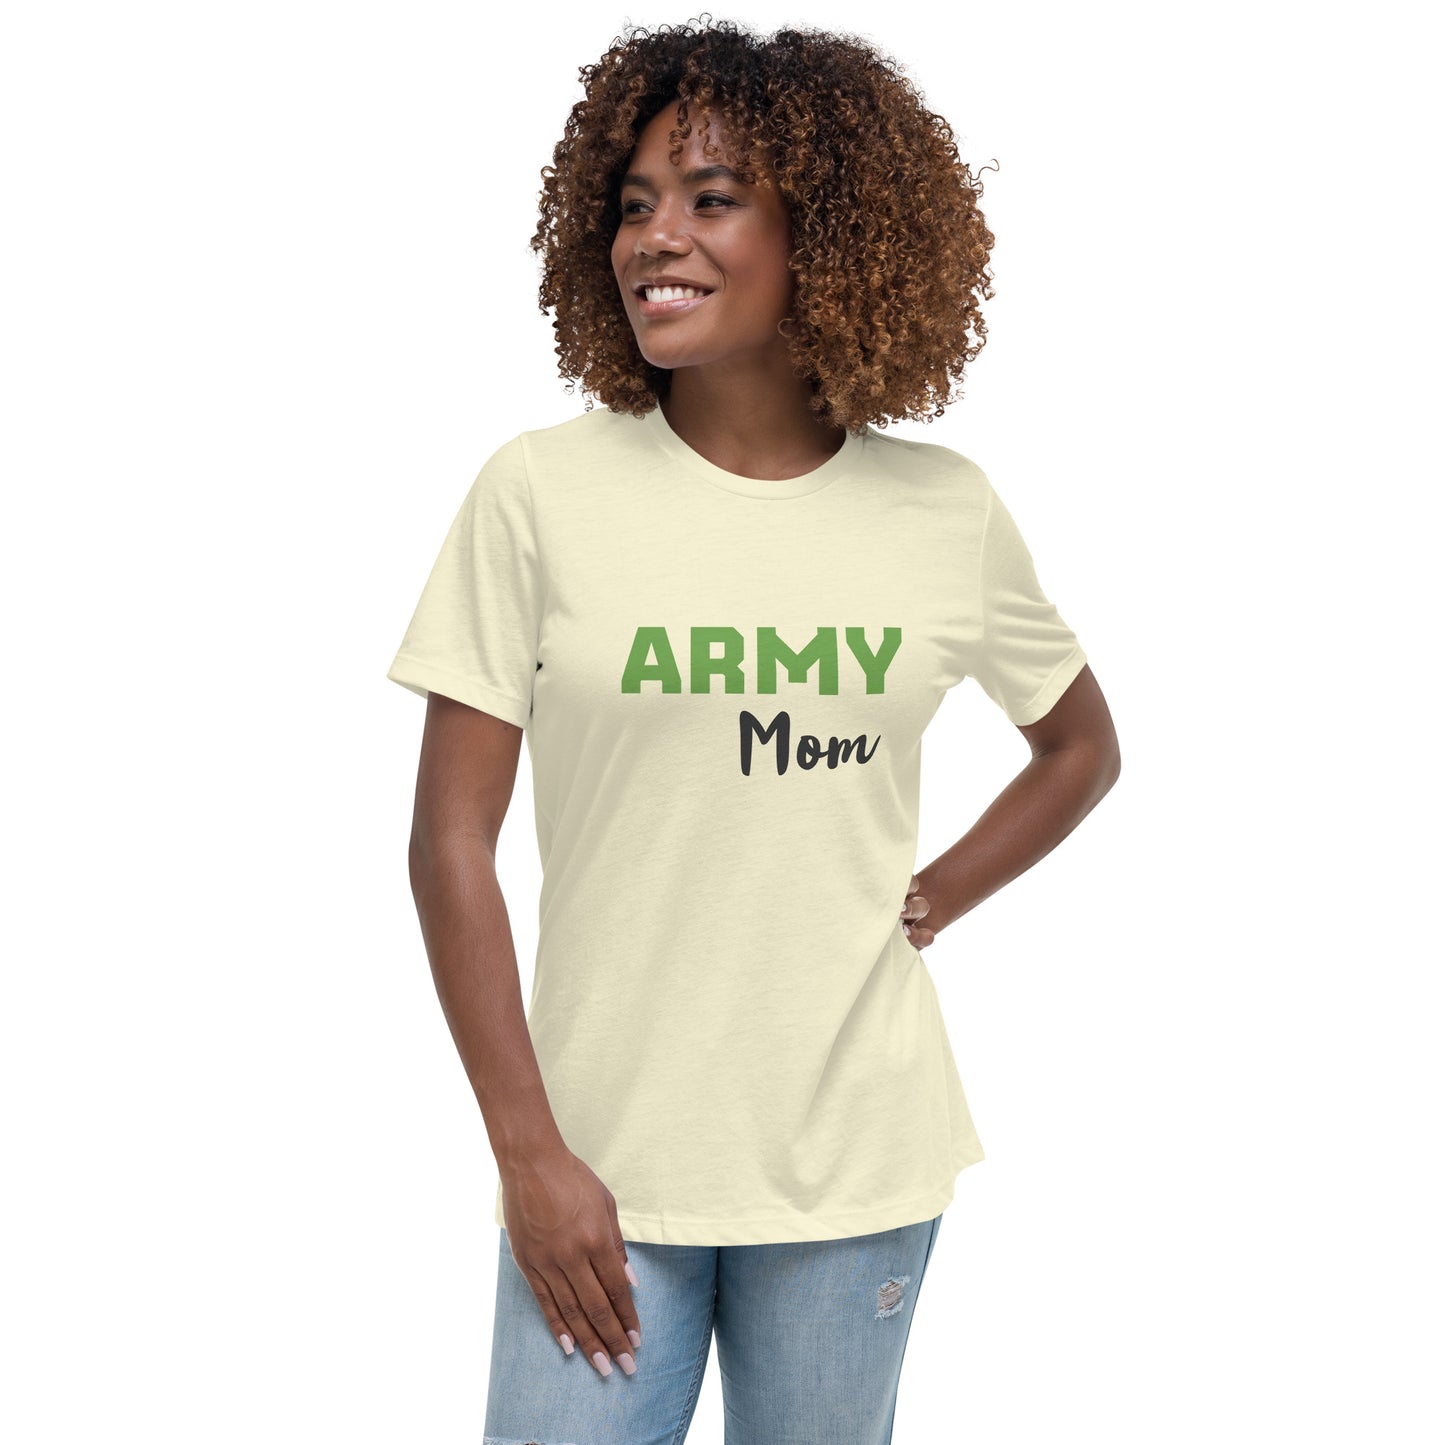 Army Mom Printed T-Shirt